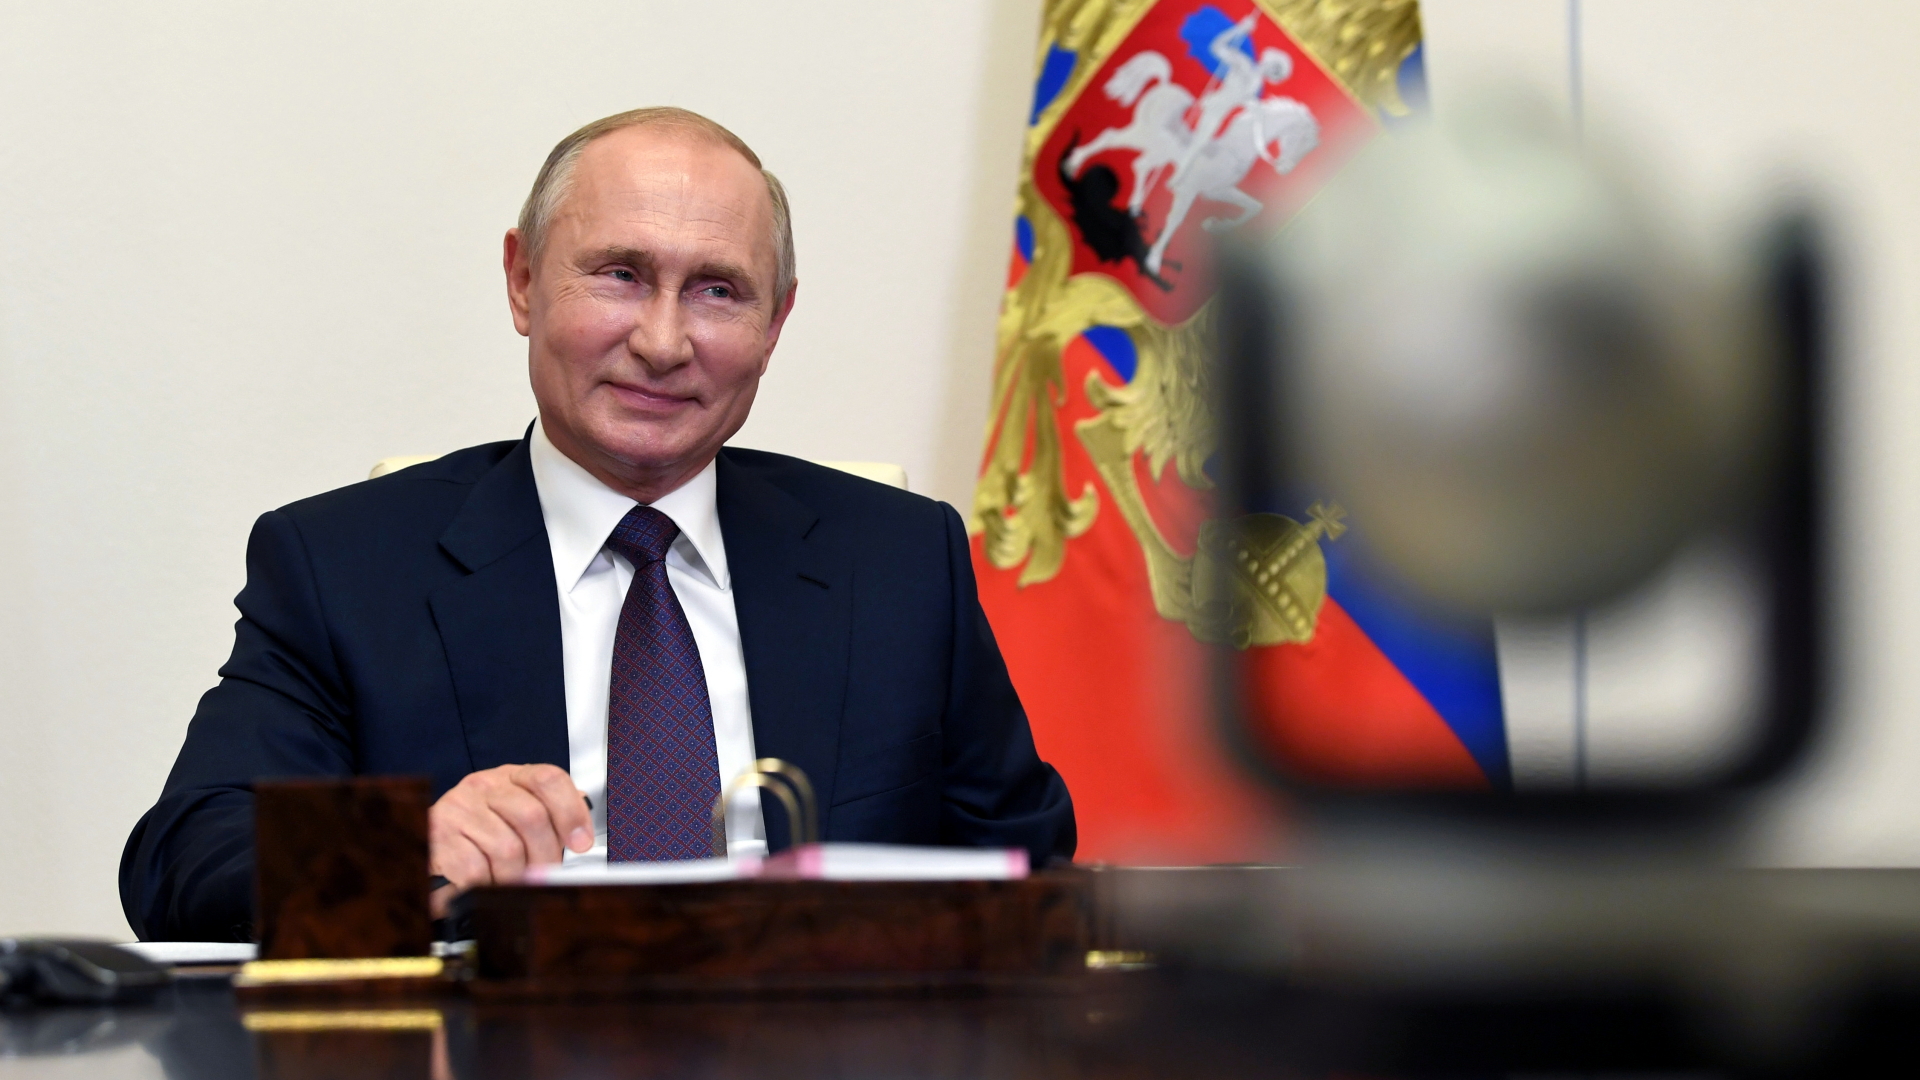 Der russische Präsident Putin. | Bildquelle: via REUTERS